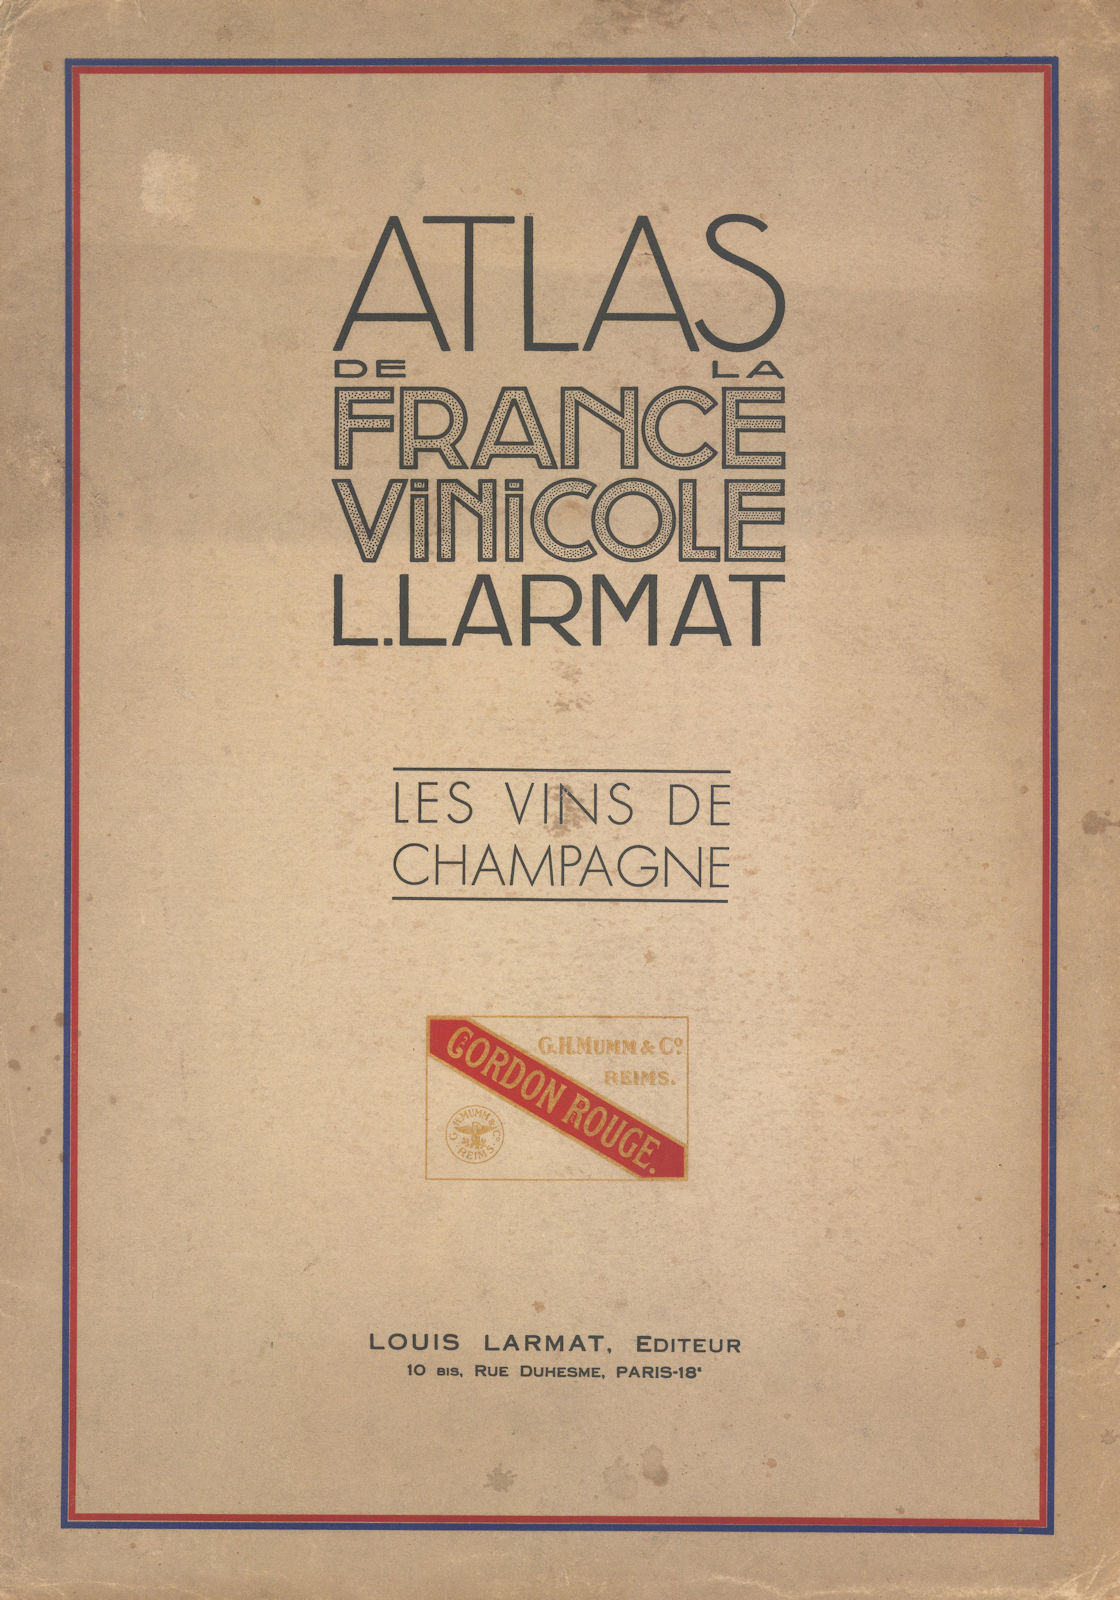 Associate Product Louis Larmat Atlas de la France Vinicole cover Champagne G.H. Mumm & Co. 1944